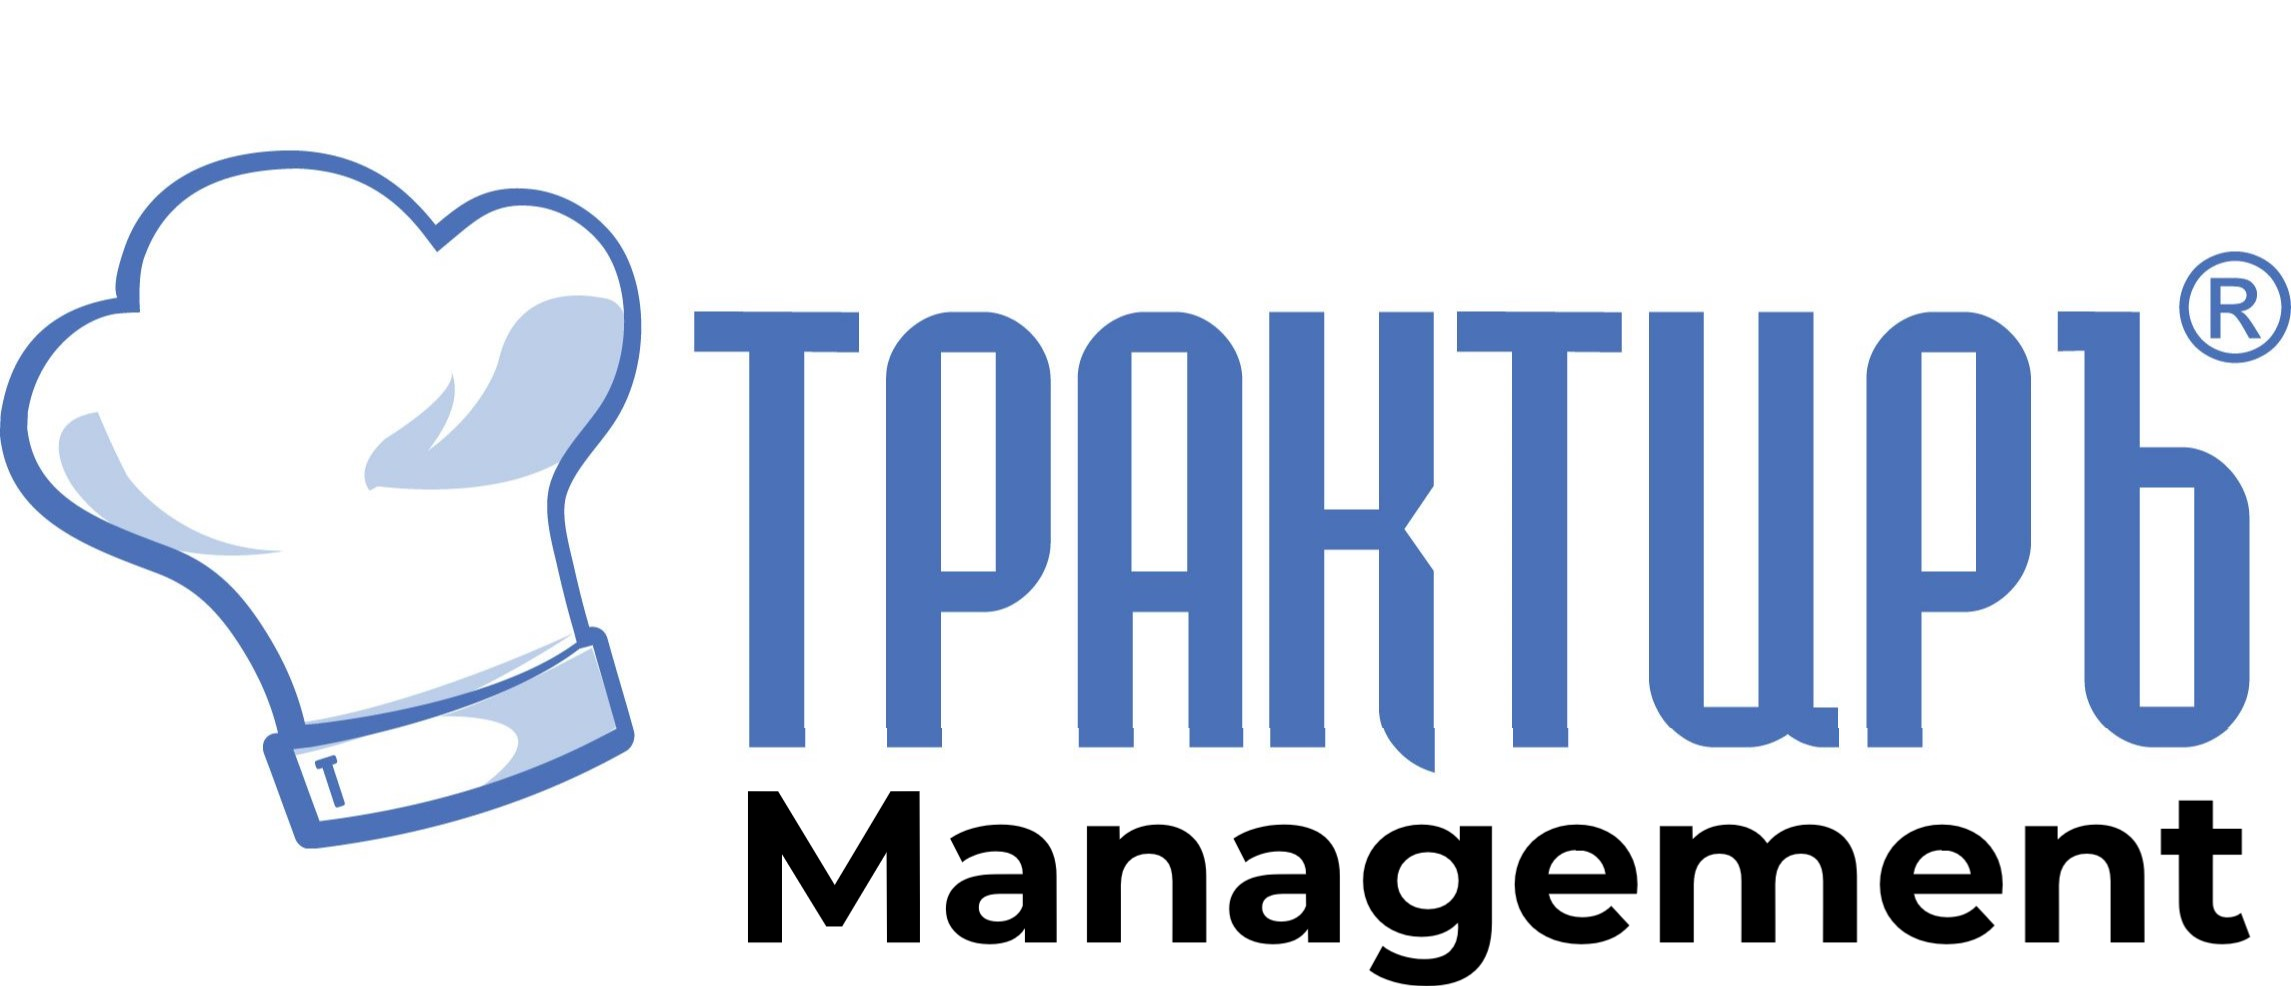 Трактиръ: Management в Томске